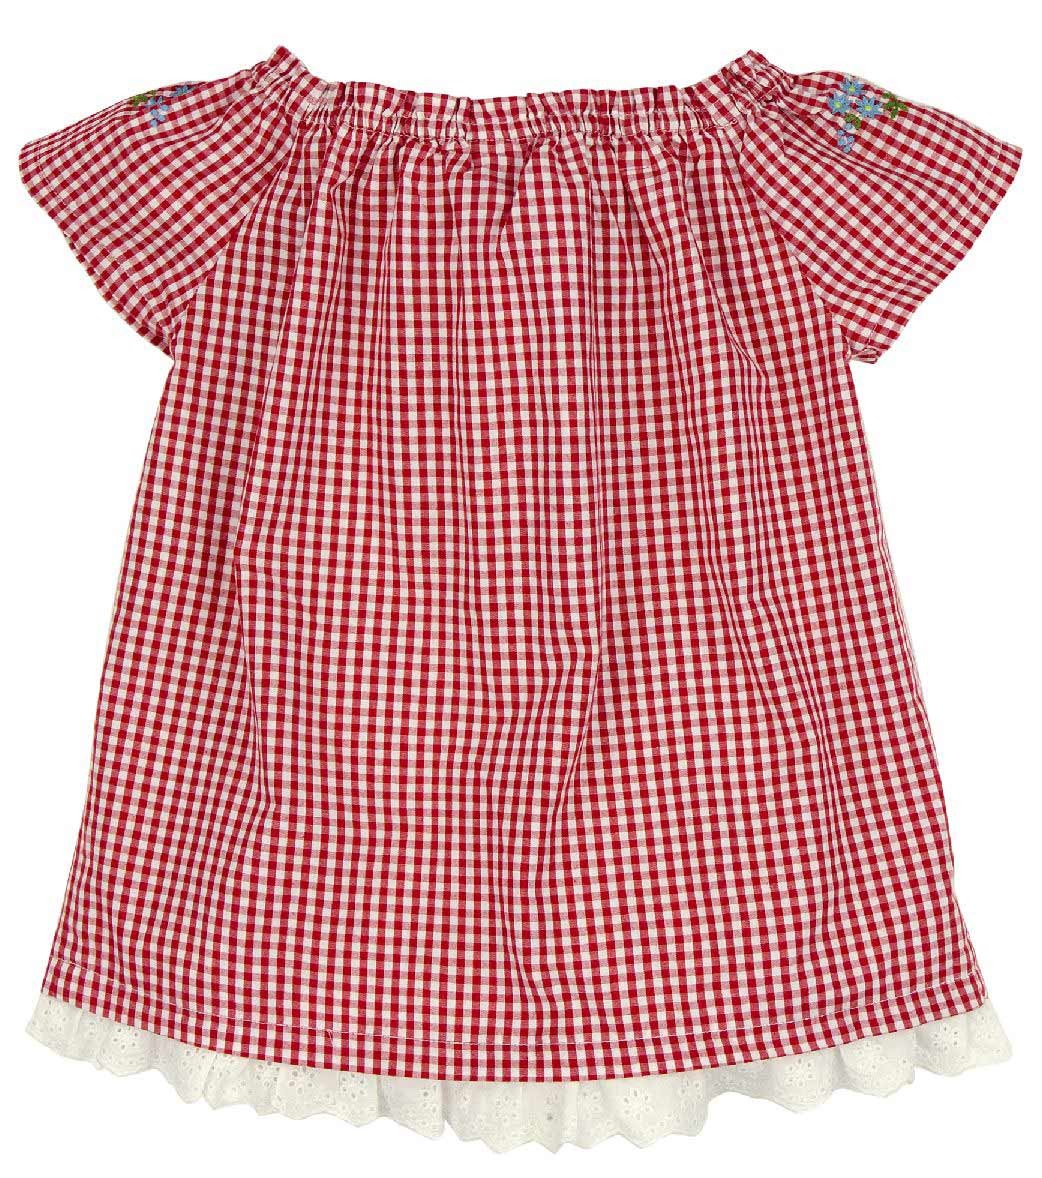 Widok: Bluzka w kratę (bluzka dziecięca 1/2 ramienia)